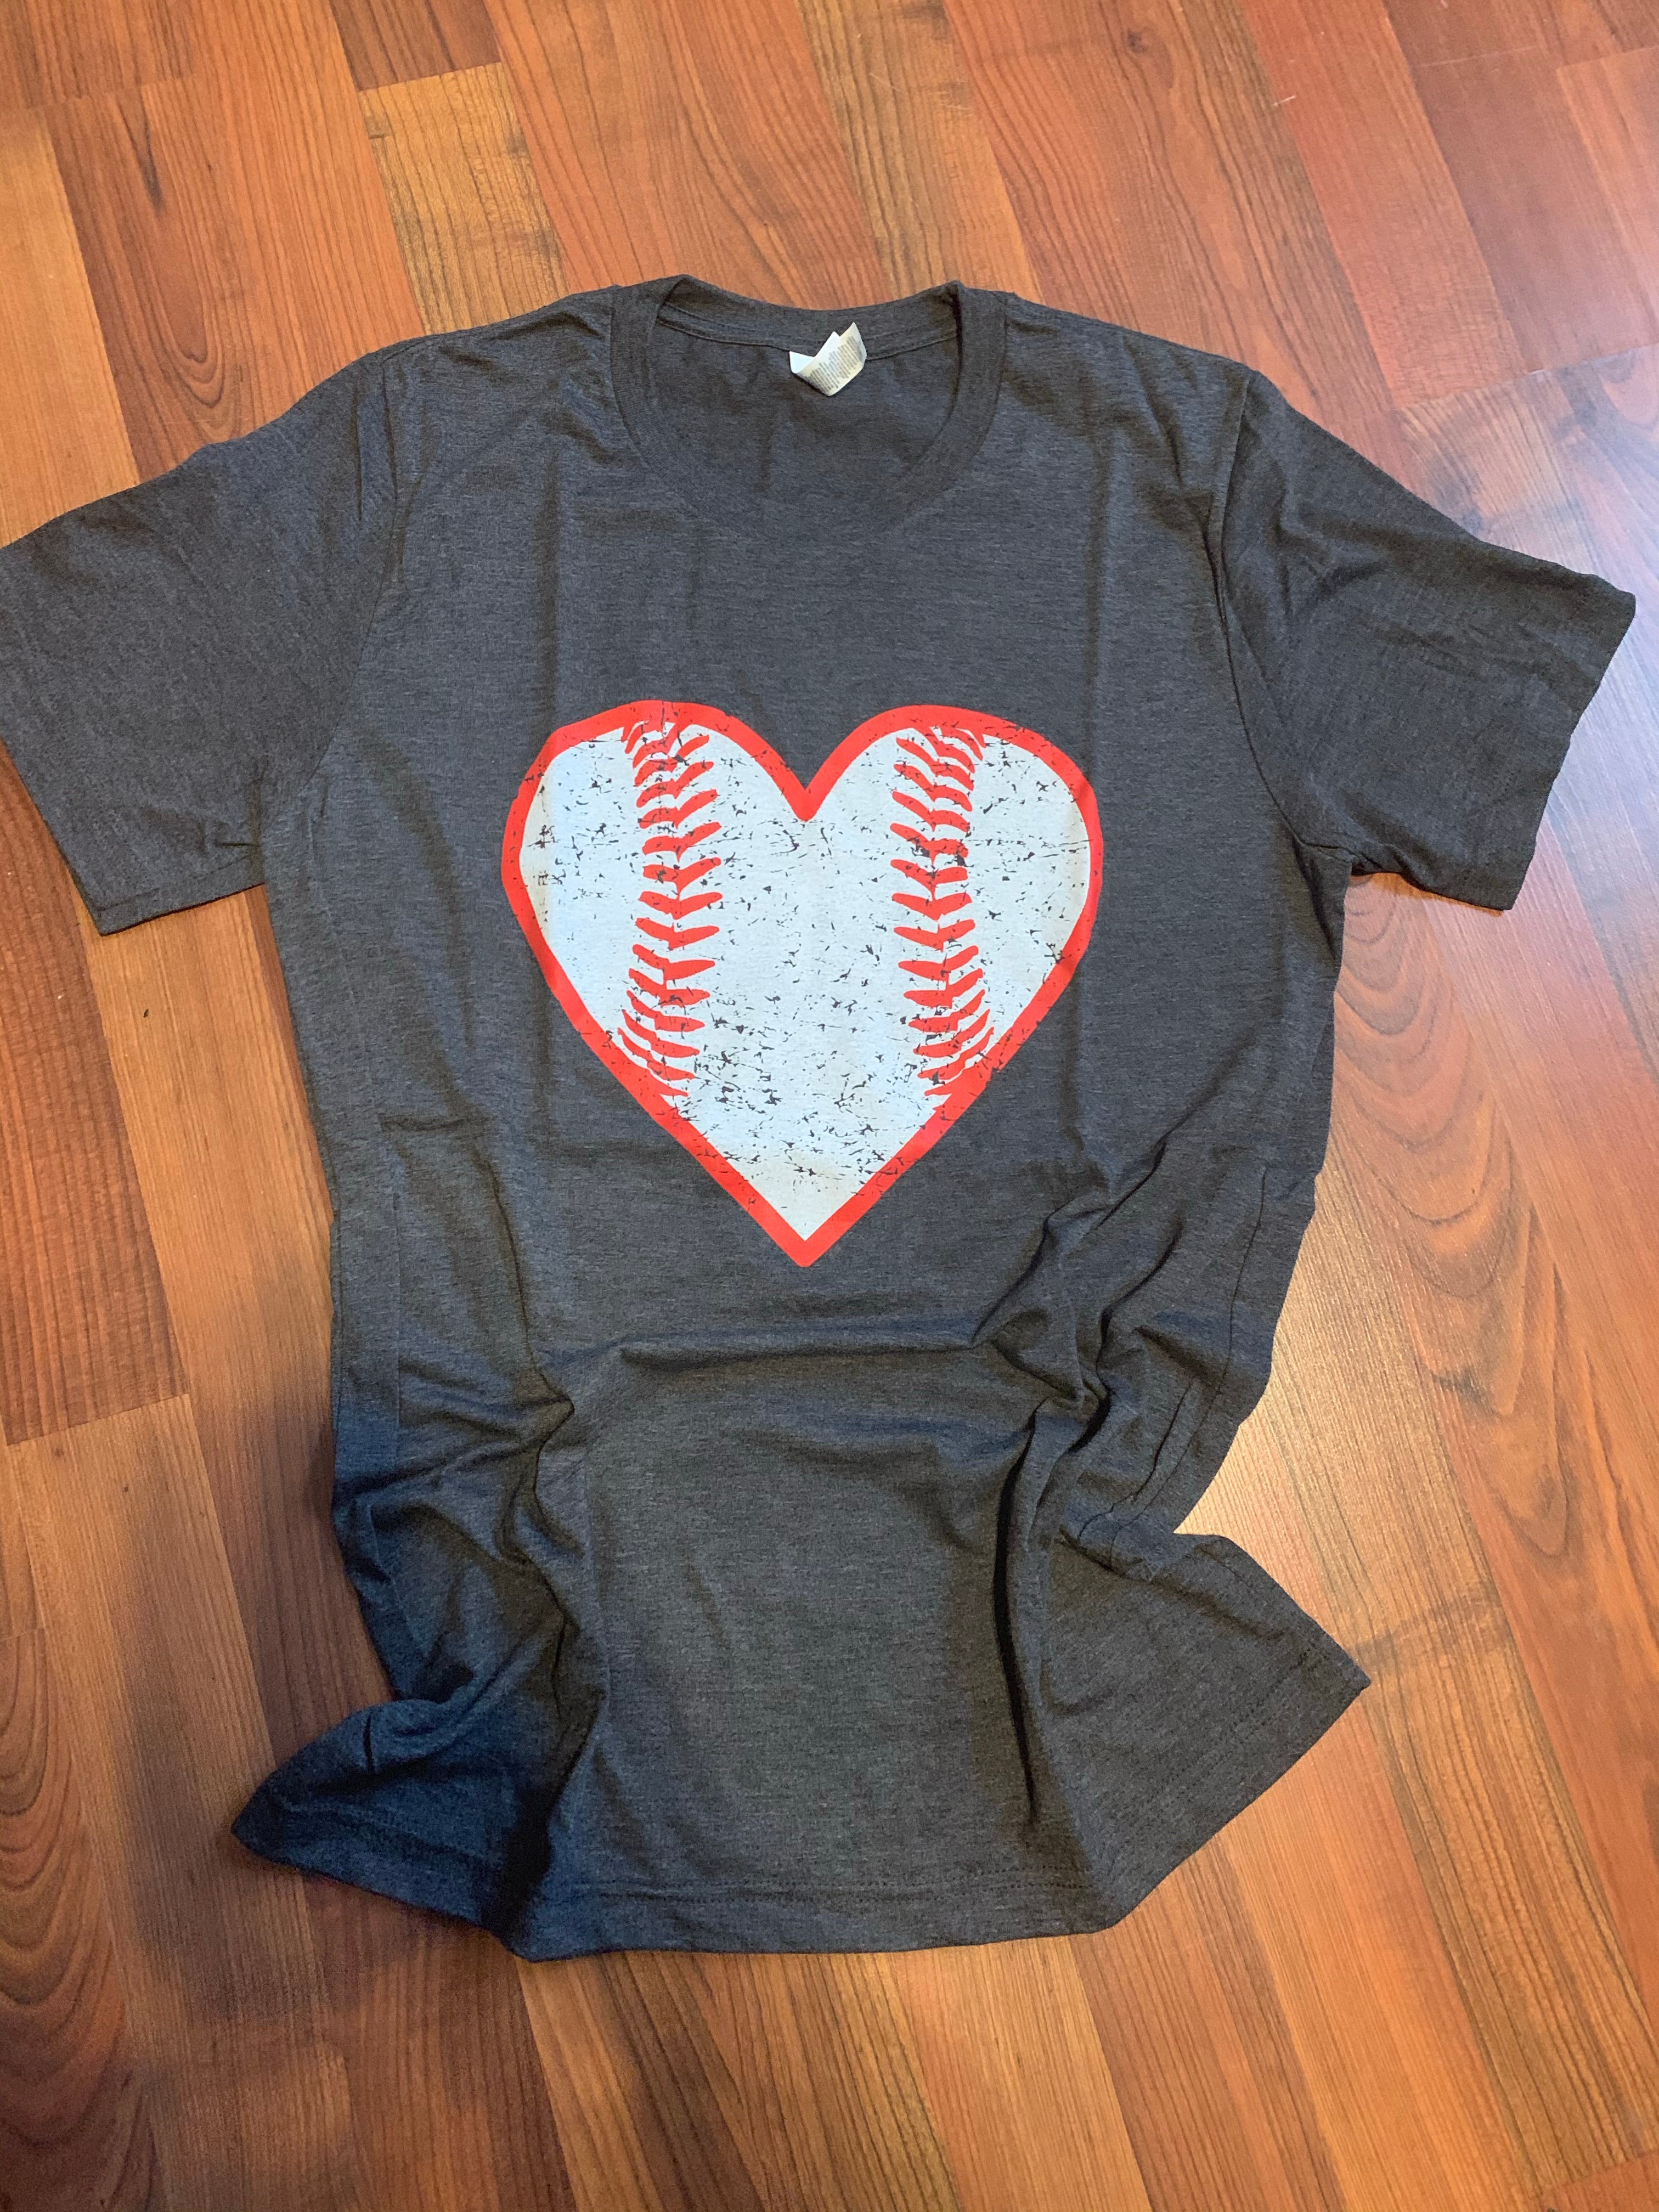 Full-Heart baseball